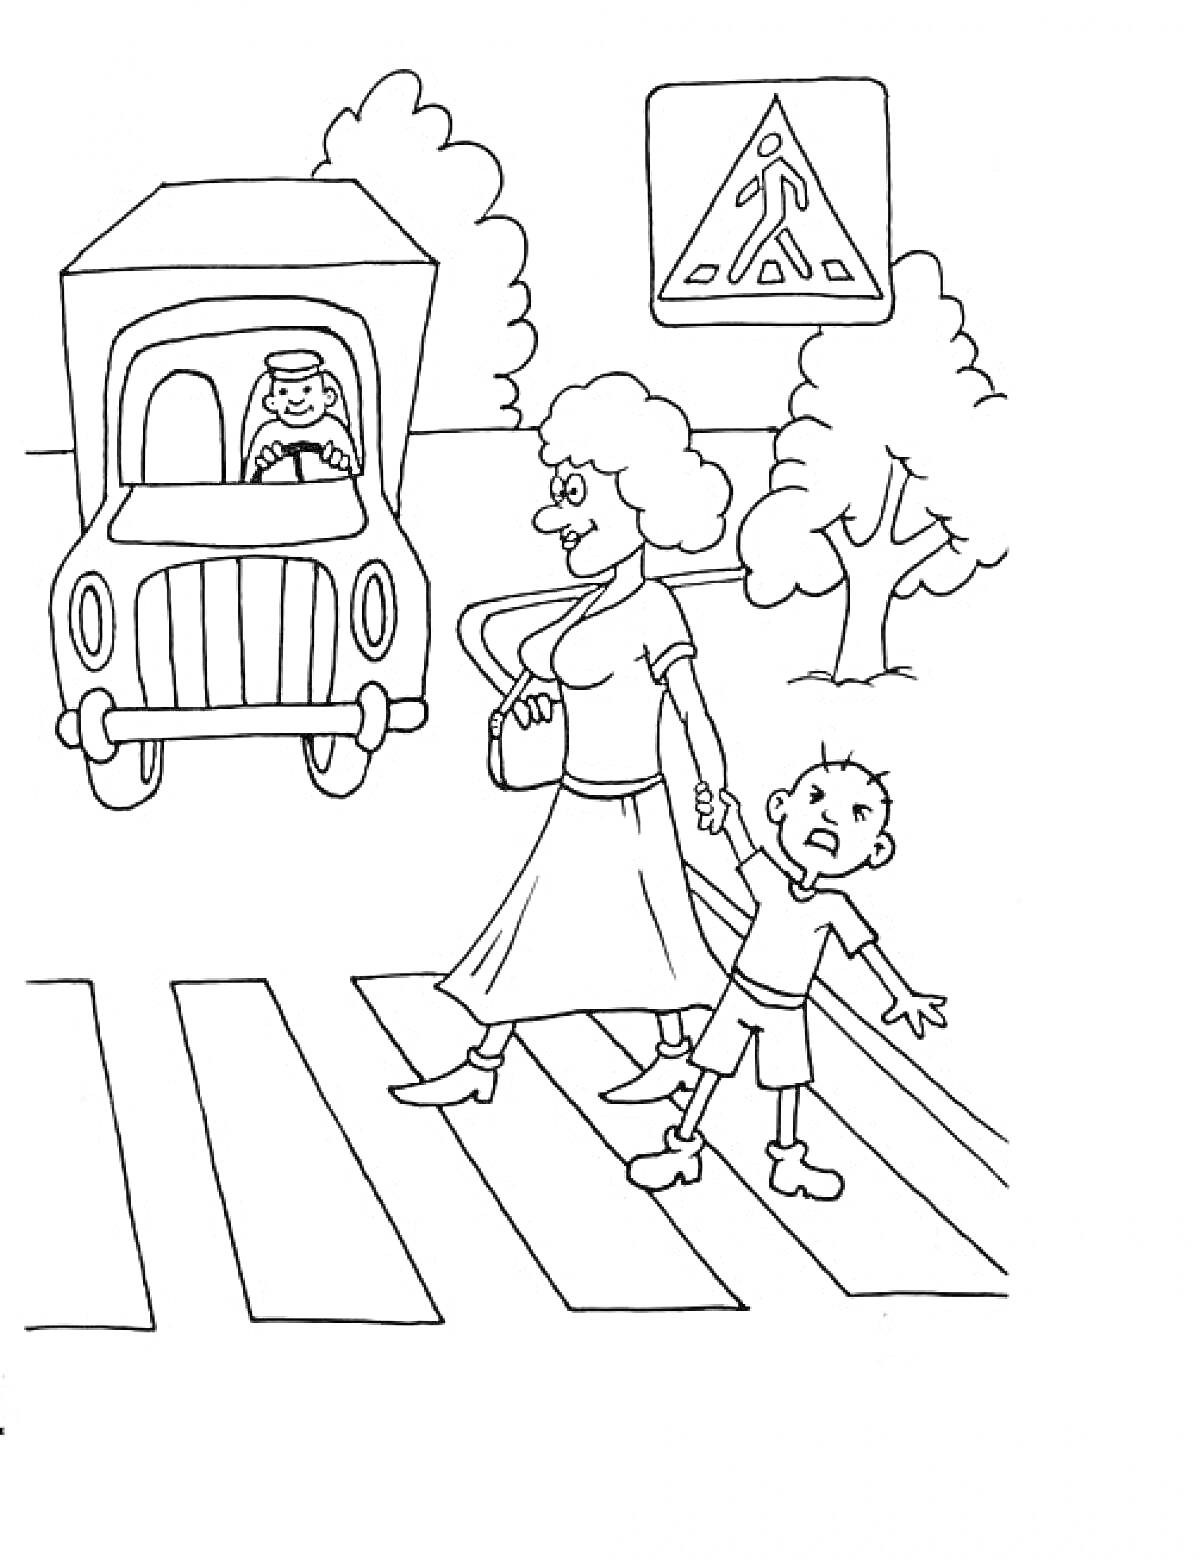 Женщина с ребенком переходят пешеходный переход, дорожный знак 